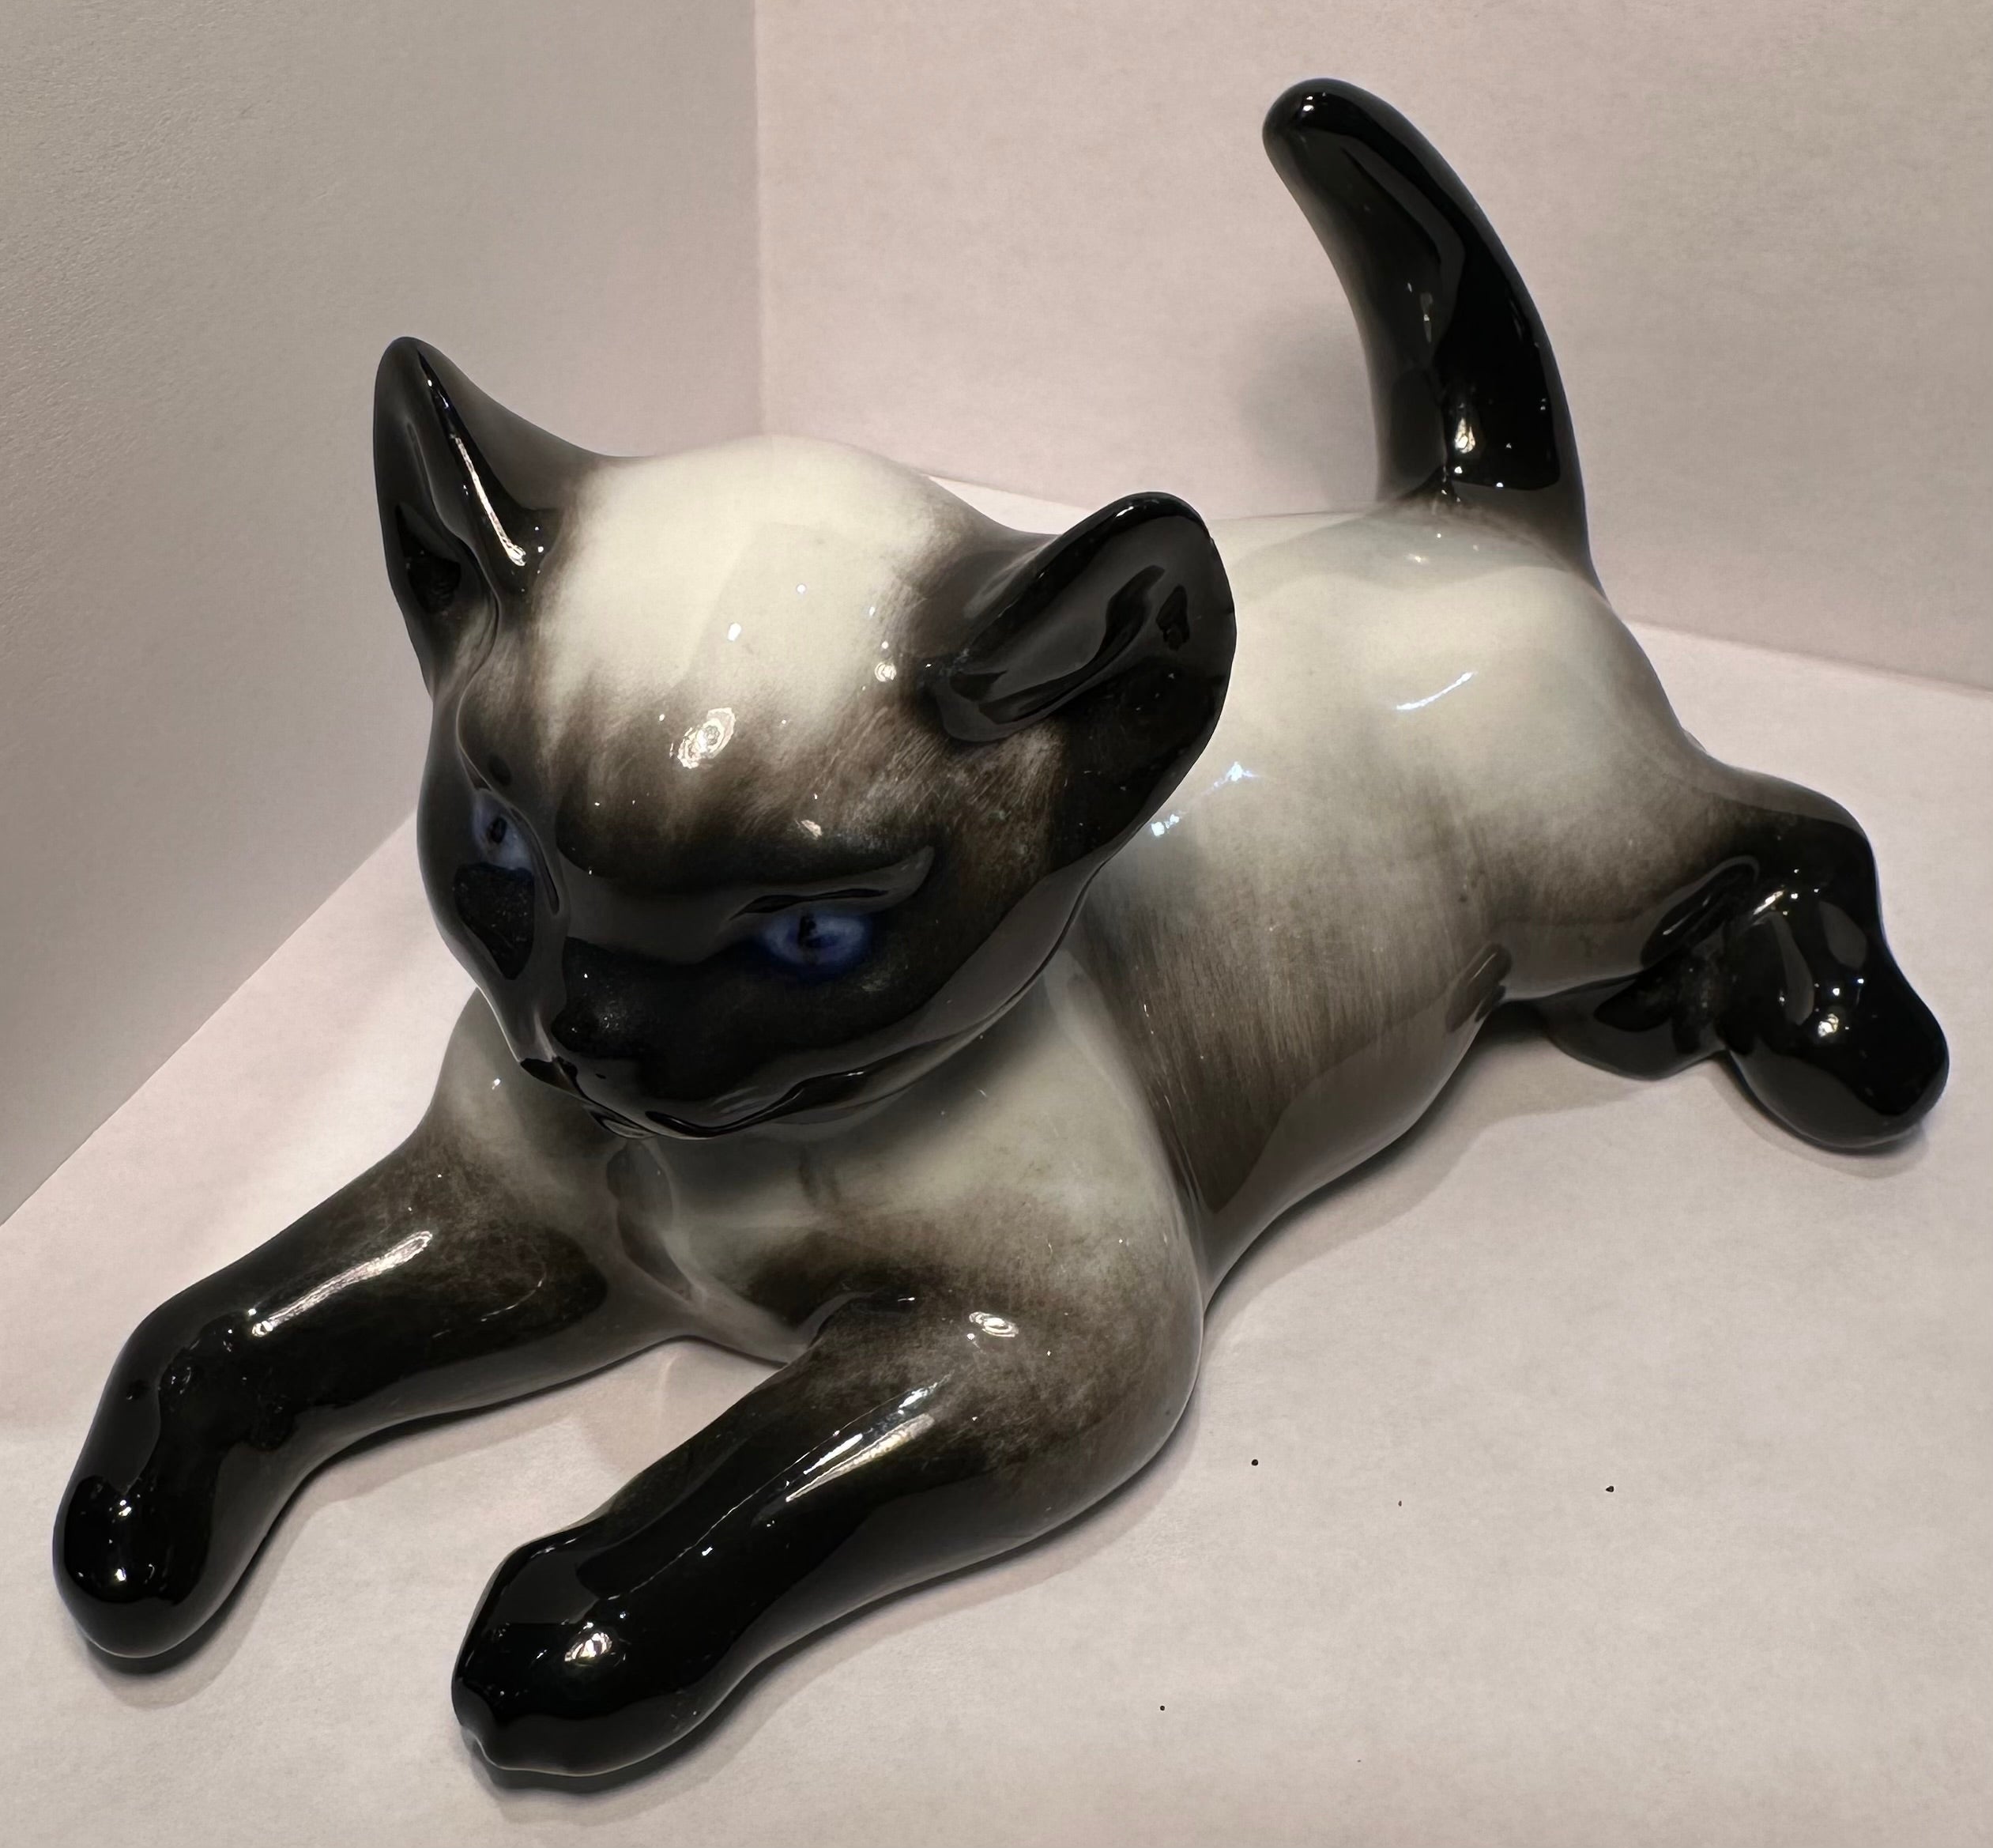 
Feinste Qualität, Vintage im Ruhestand, handgefertigt und handbemalt in Deutschland, Rosenthal Porzellan Siam Kätzchen oder Katze Figur von bekannten verstorbenen deutschen Künstler, Fritz Heidenreich (1895-1966) entworfen. Die Katze wurde